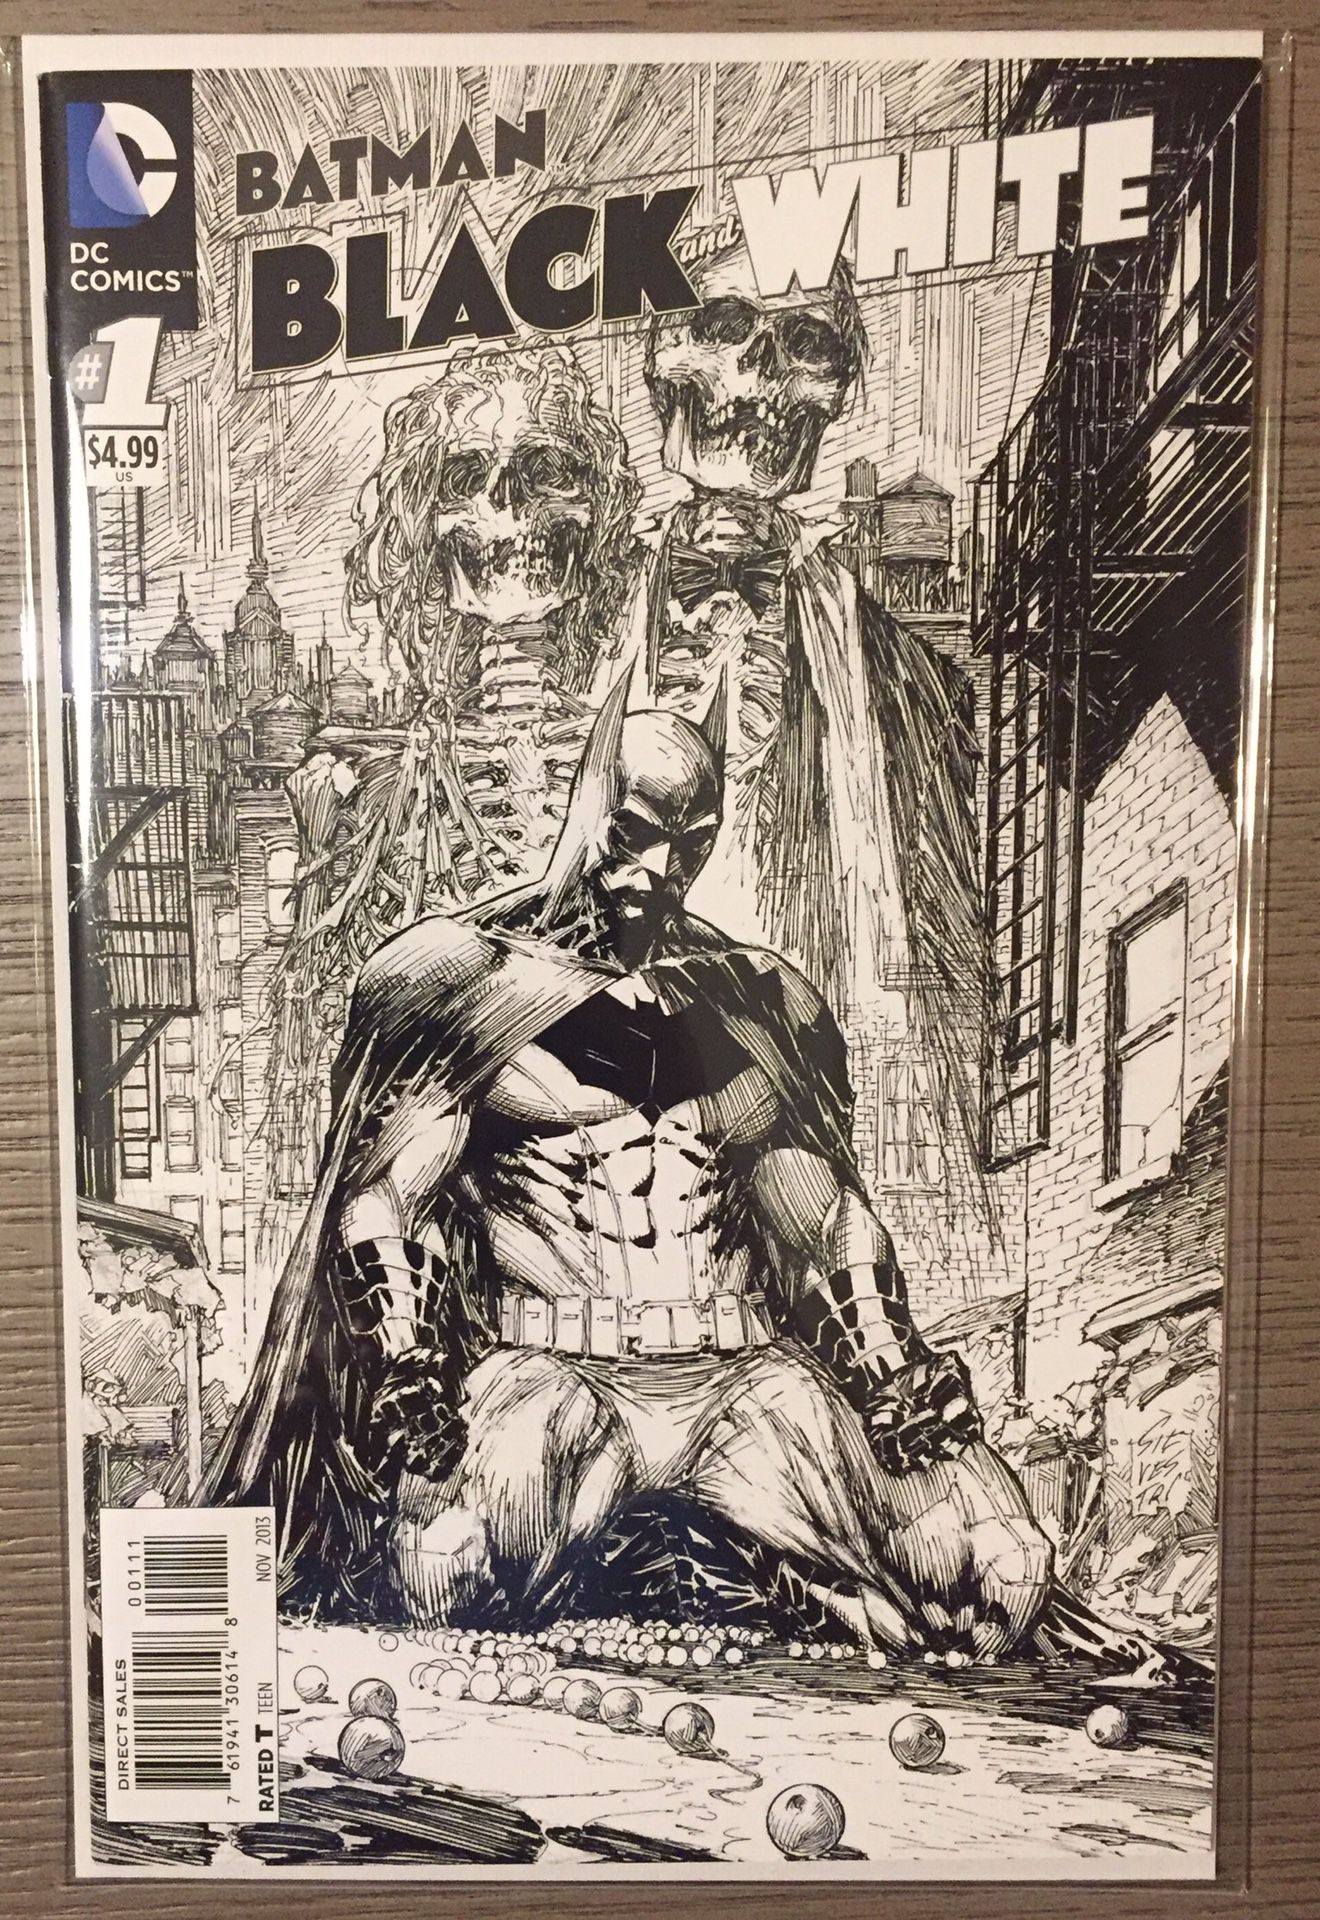 Batman / Flash comic books $1 each